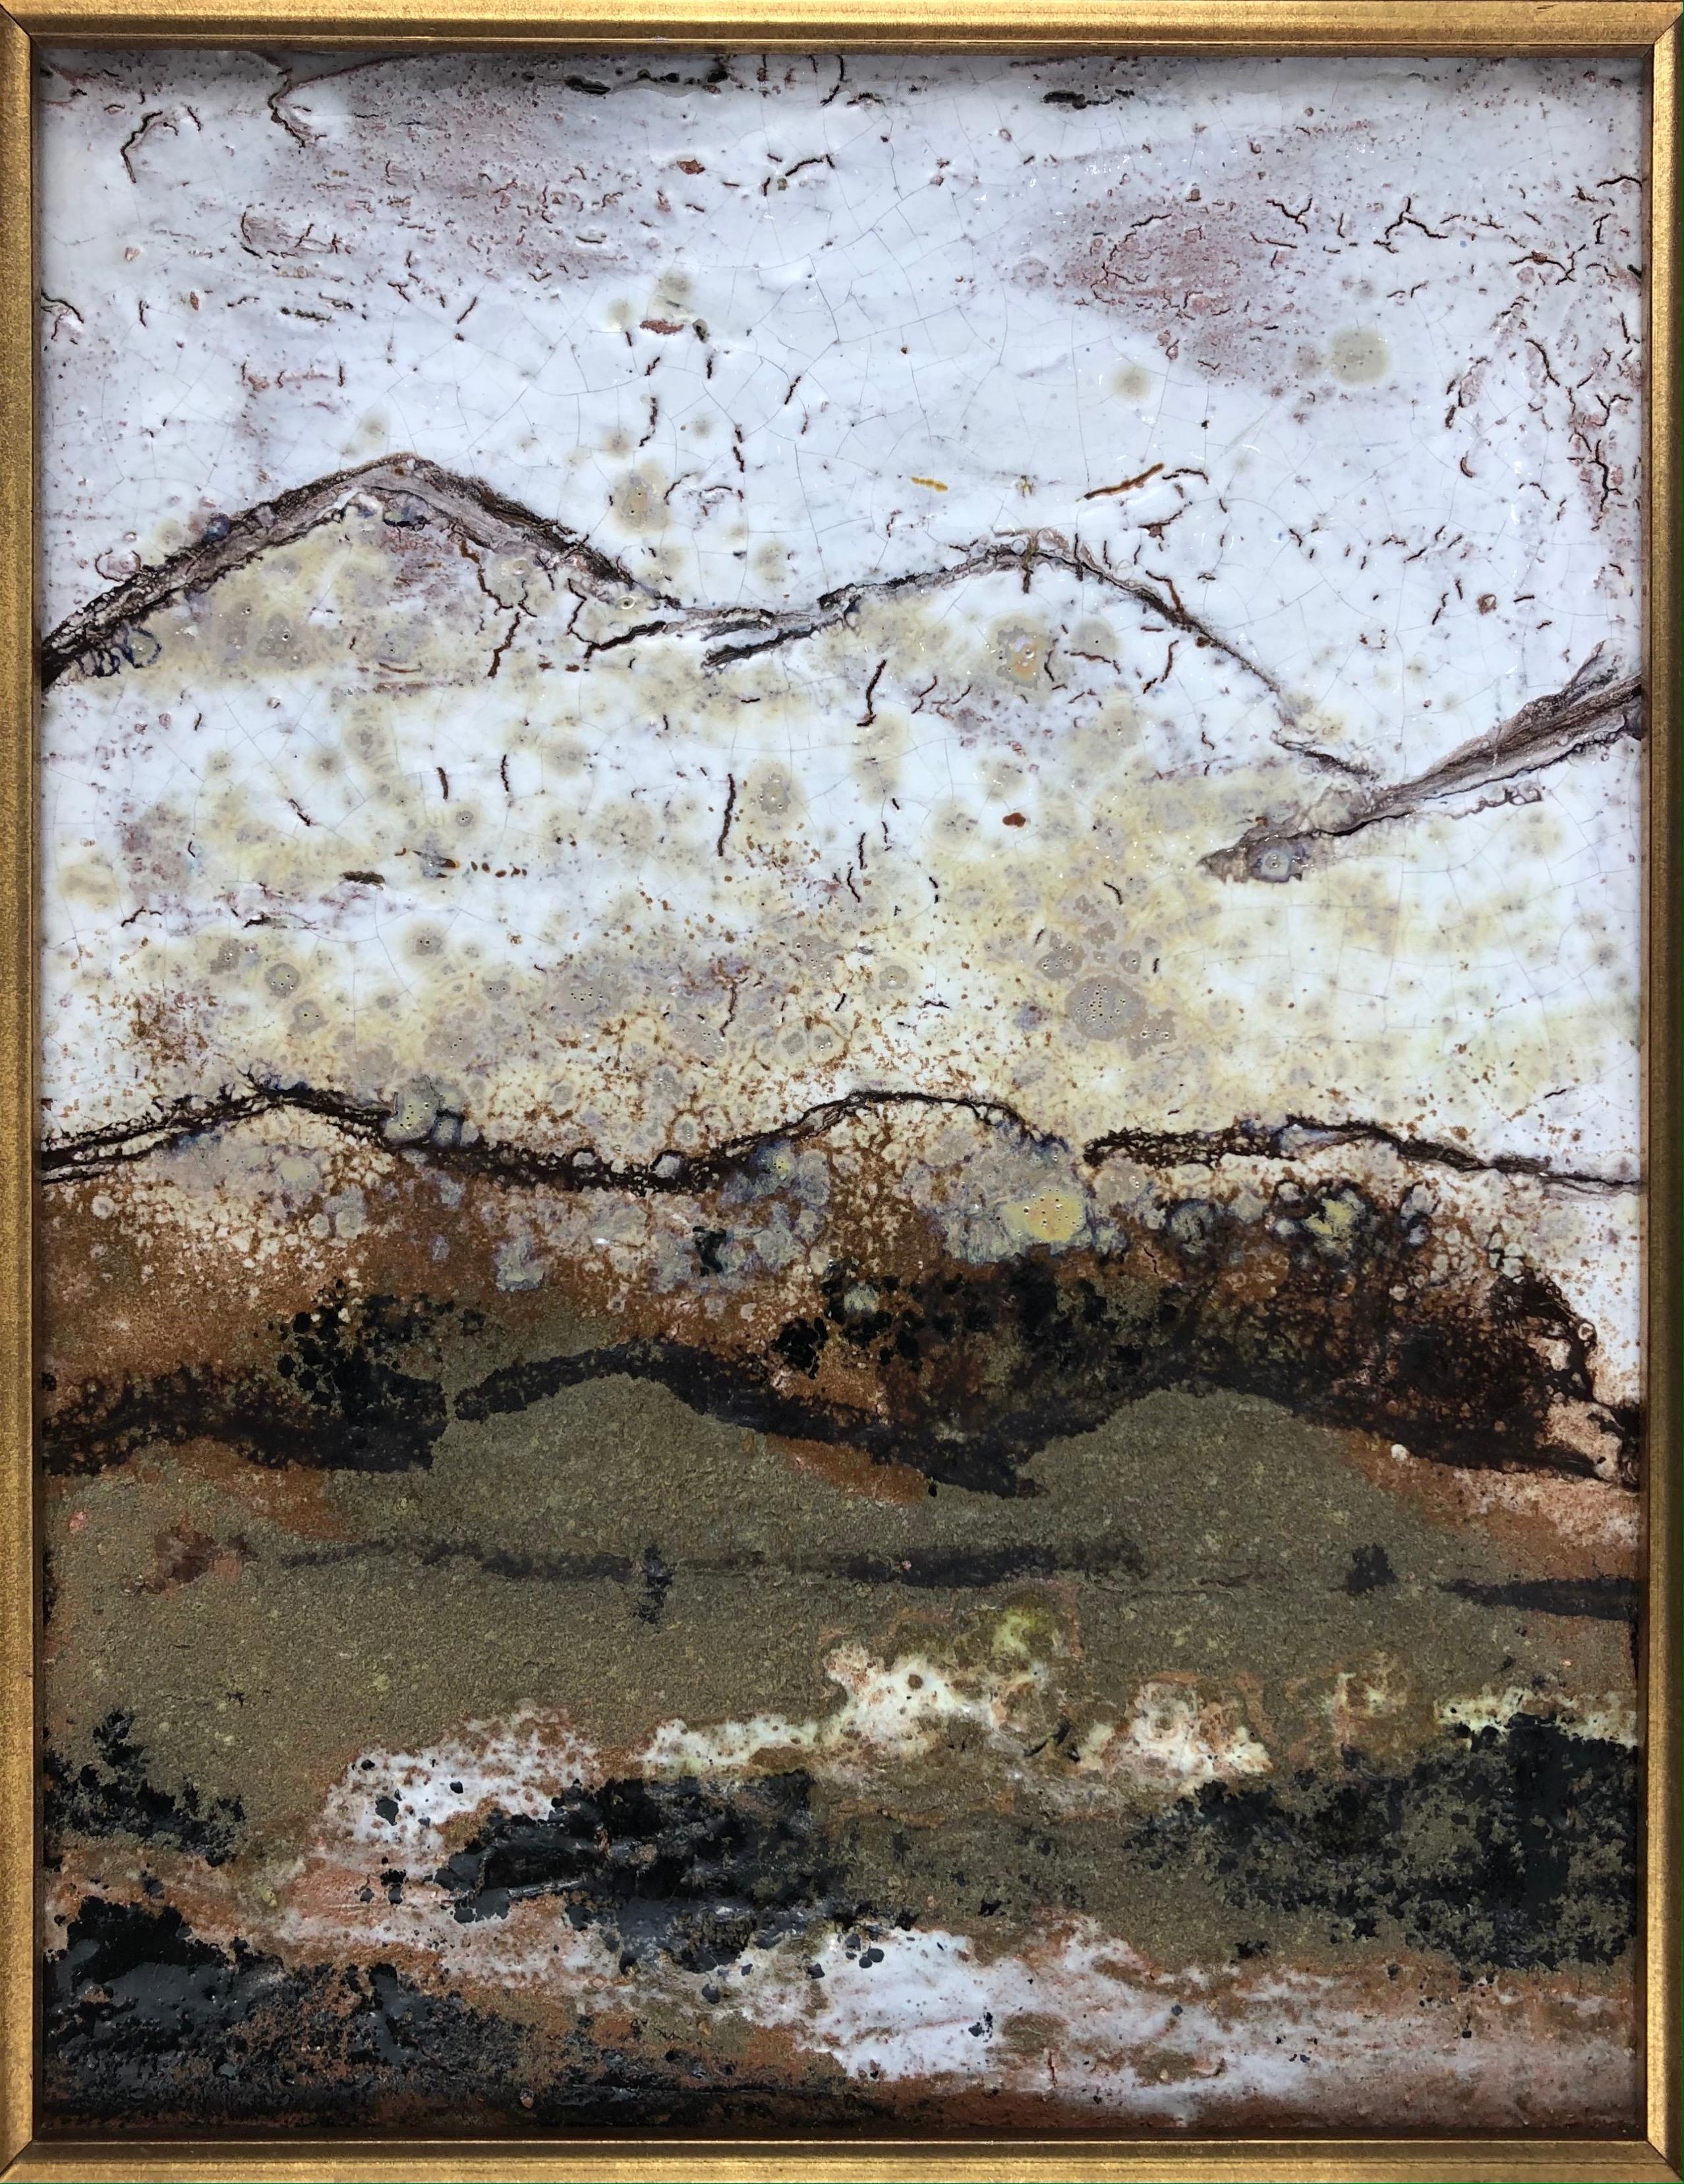 Magnifique carreau d'art mural en céramique peint à la main, datant du milieu du siècle dernier, représentant un paysage avec une chaîne de montagnes dans la région de la Provence. 

Les tons terreux du marron, du beige et d'autres couleurs